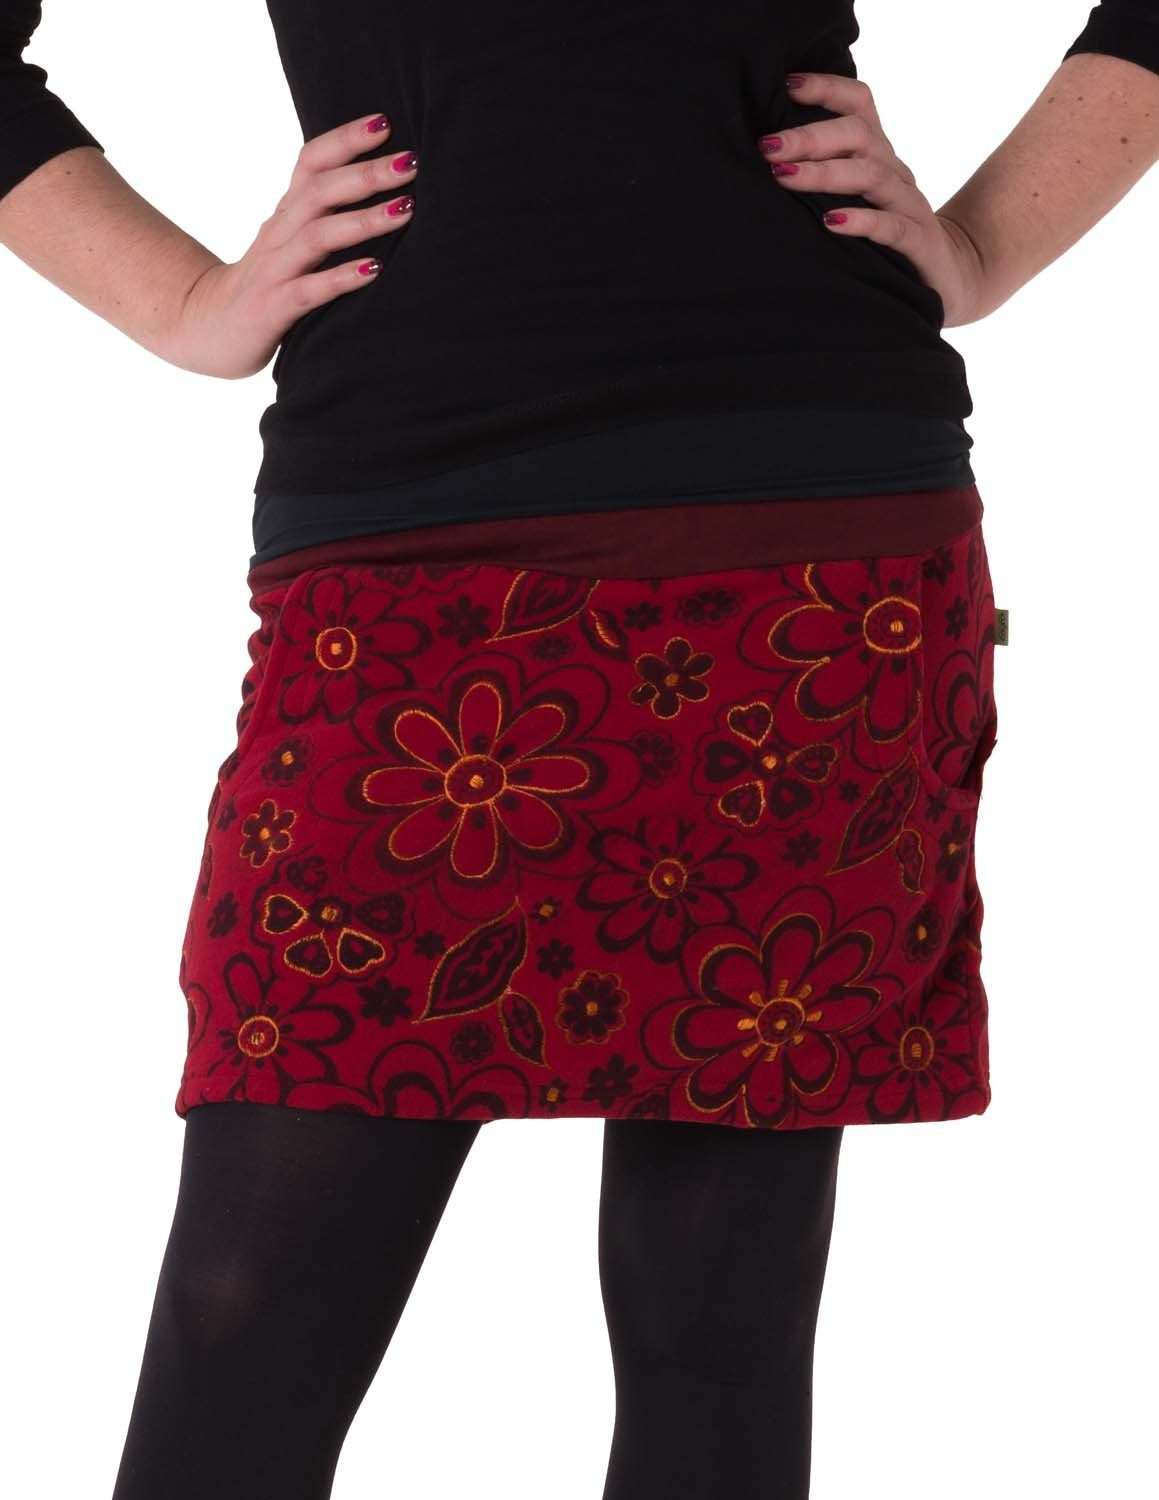 Юбка-трапеция Теплая флисовая юбка с вышитыми цветами кешер